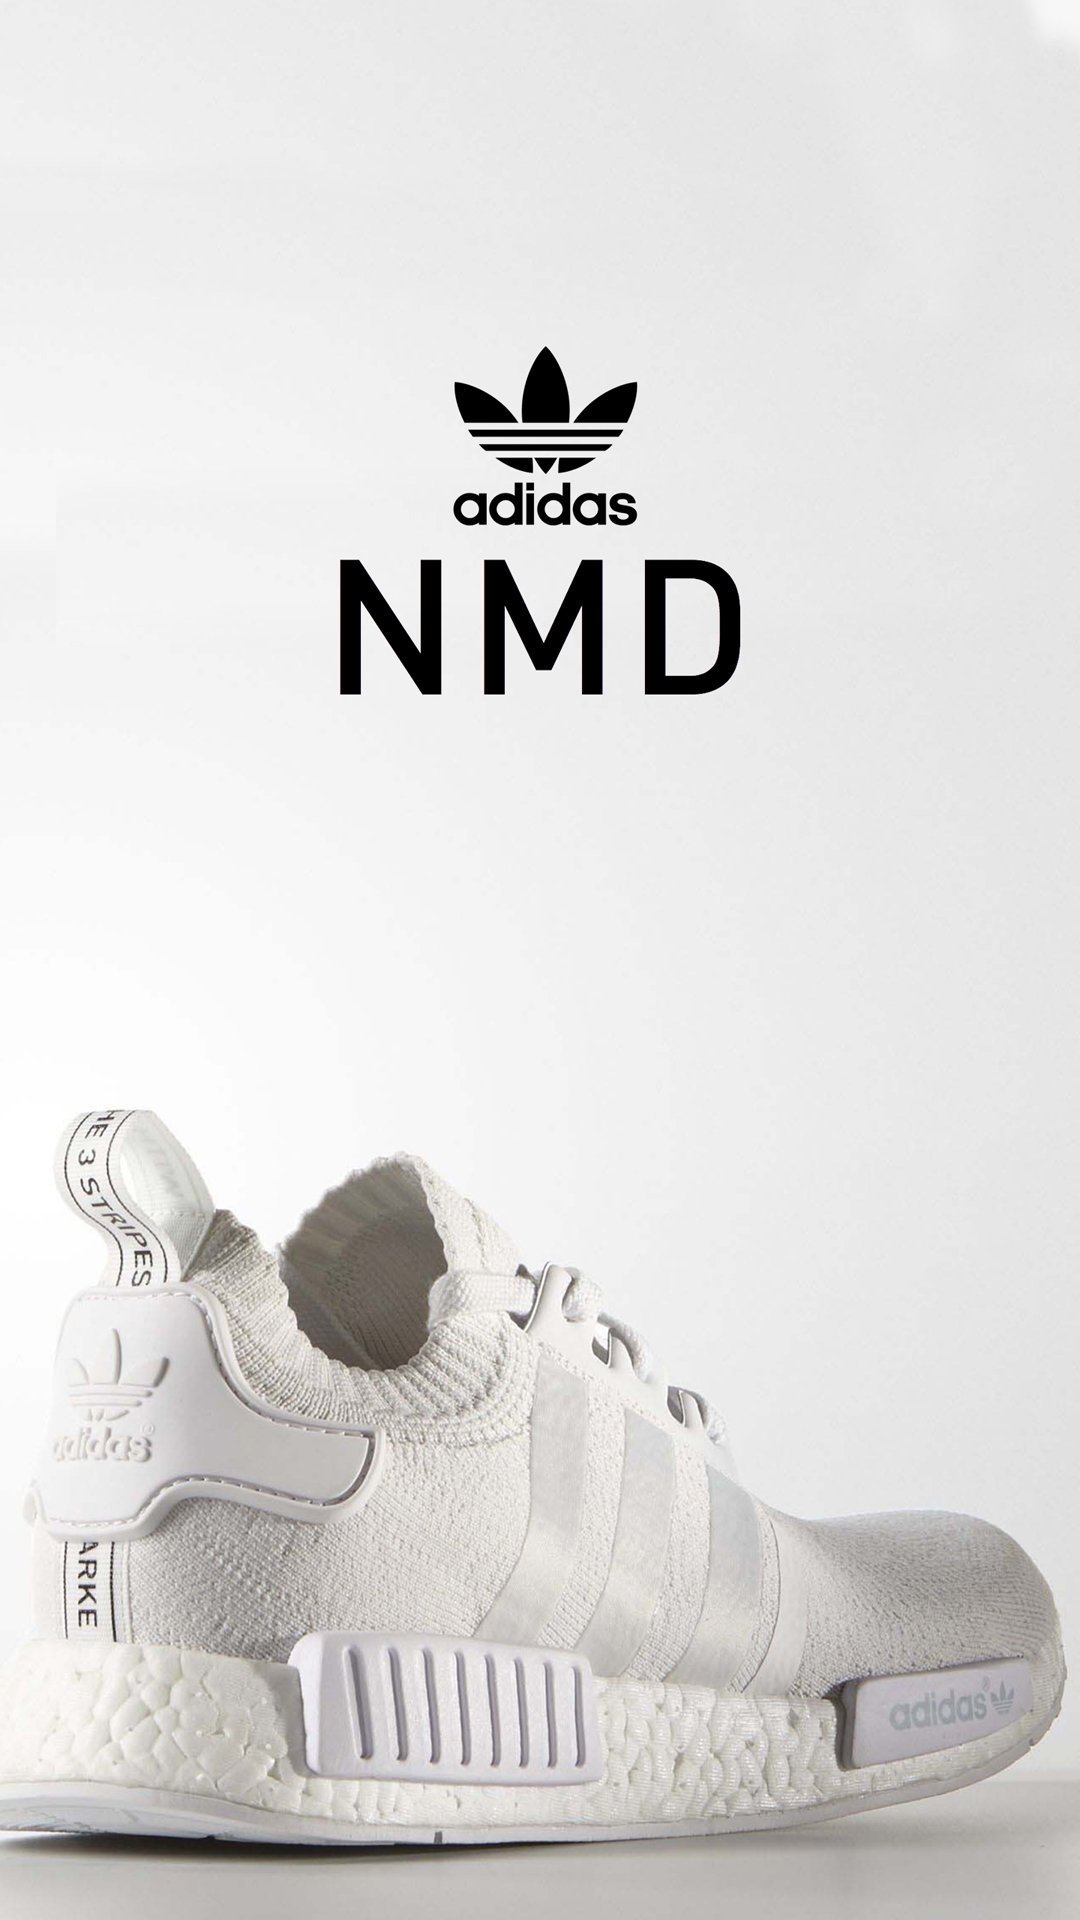 Adidas NMD Wallpapers on WallpaperSafari